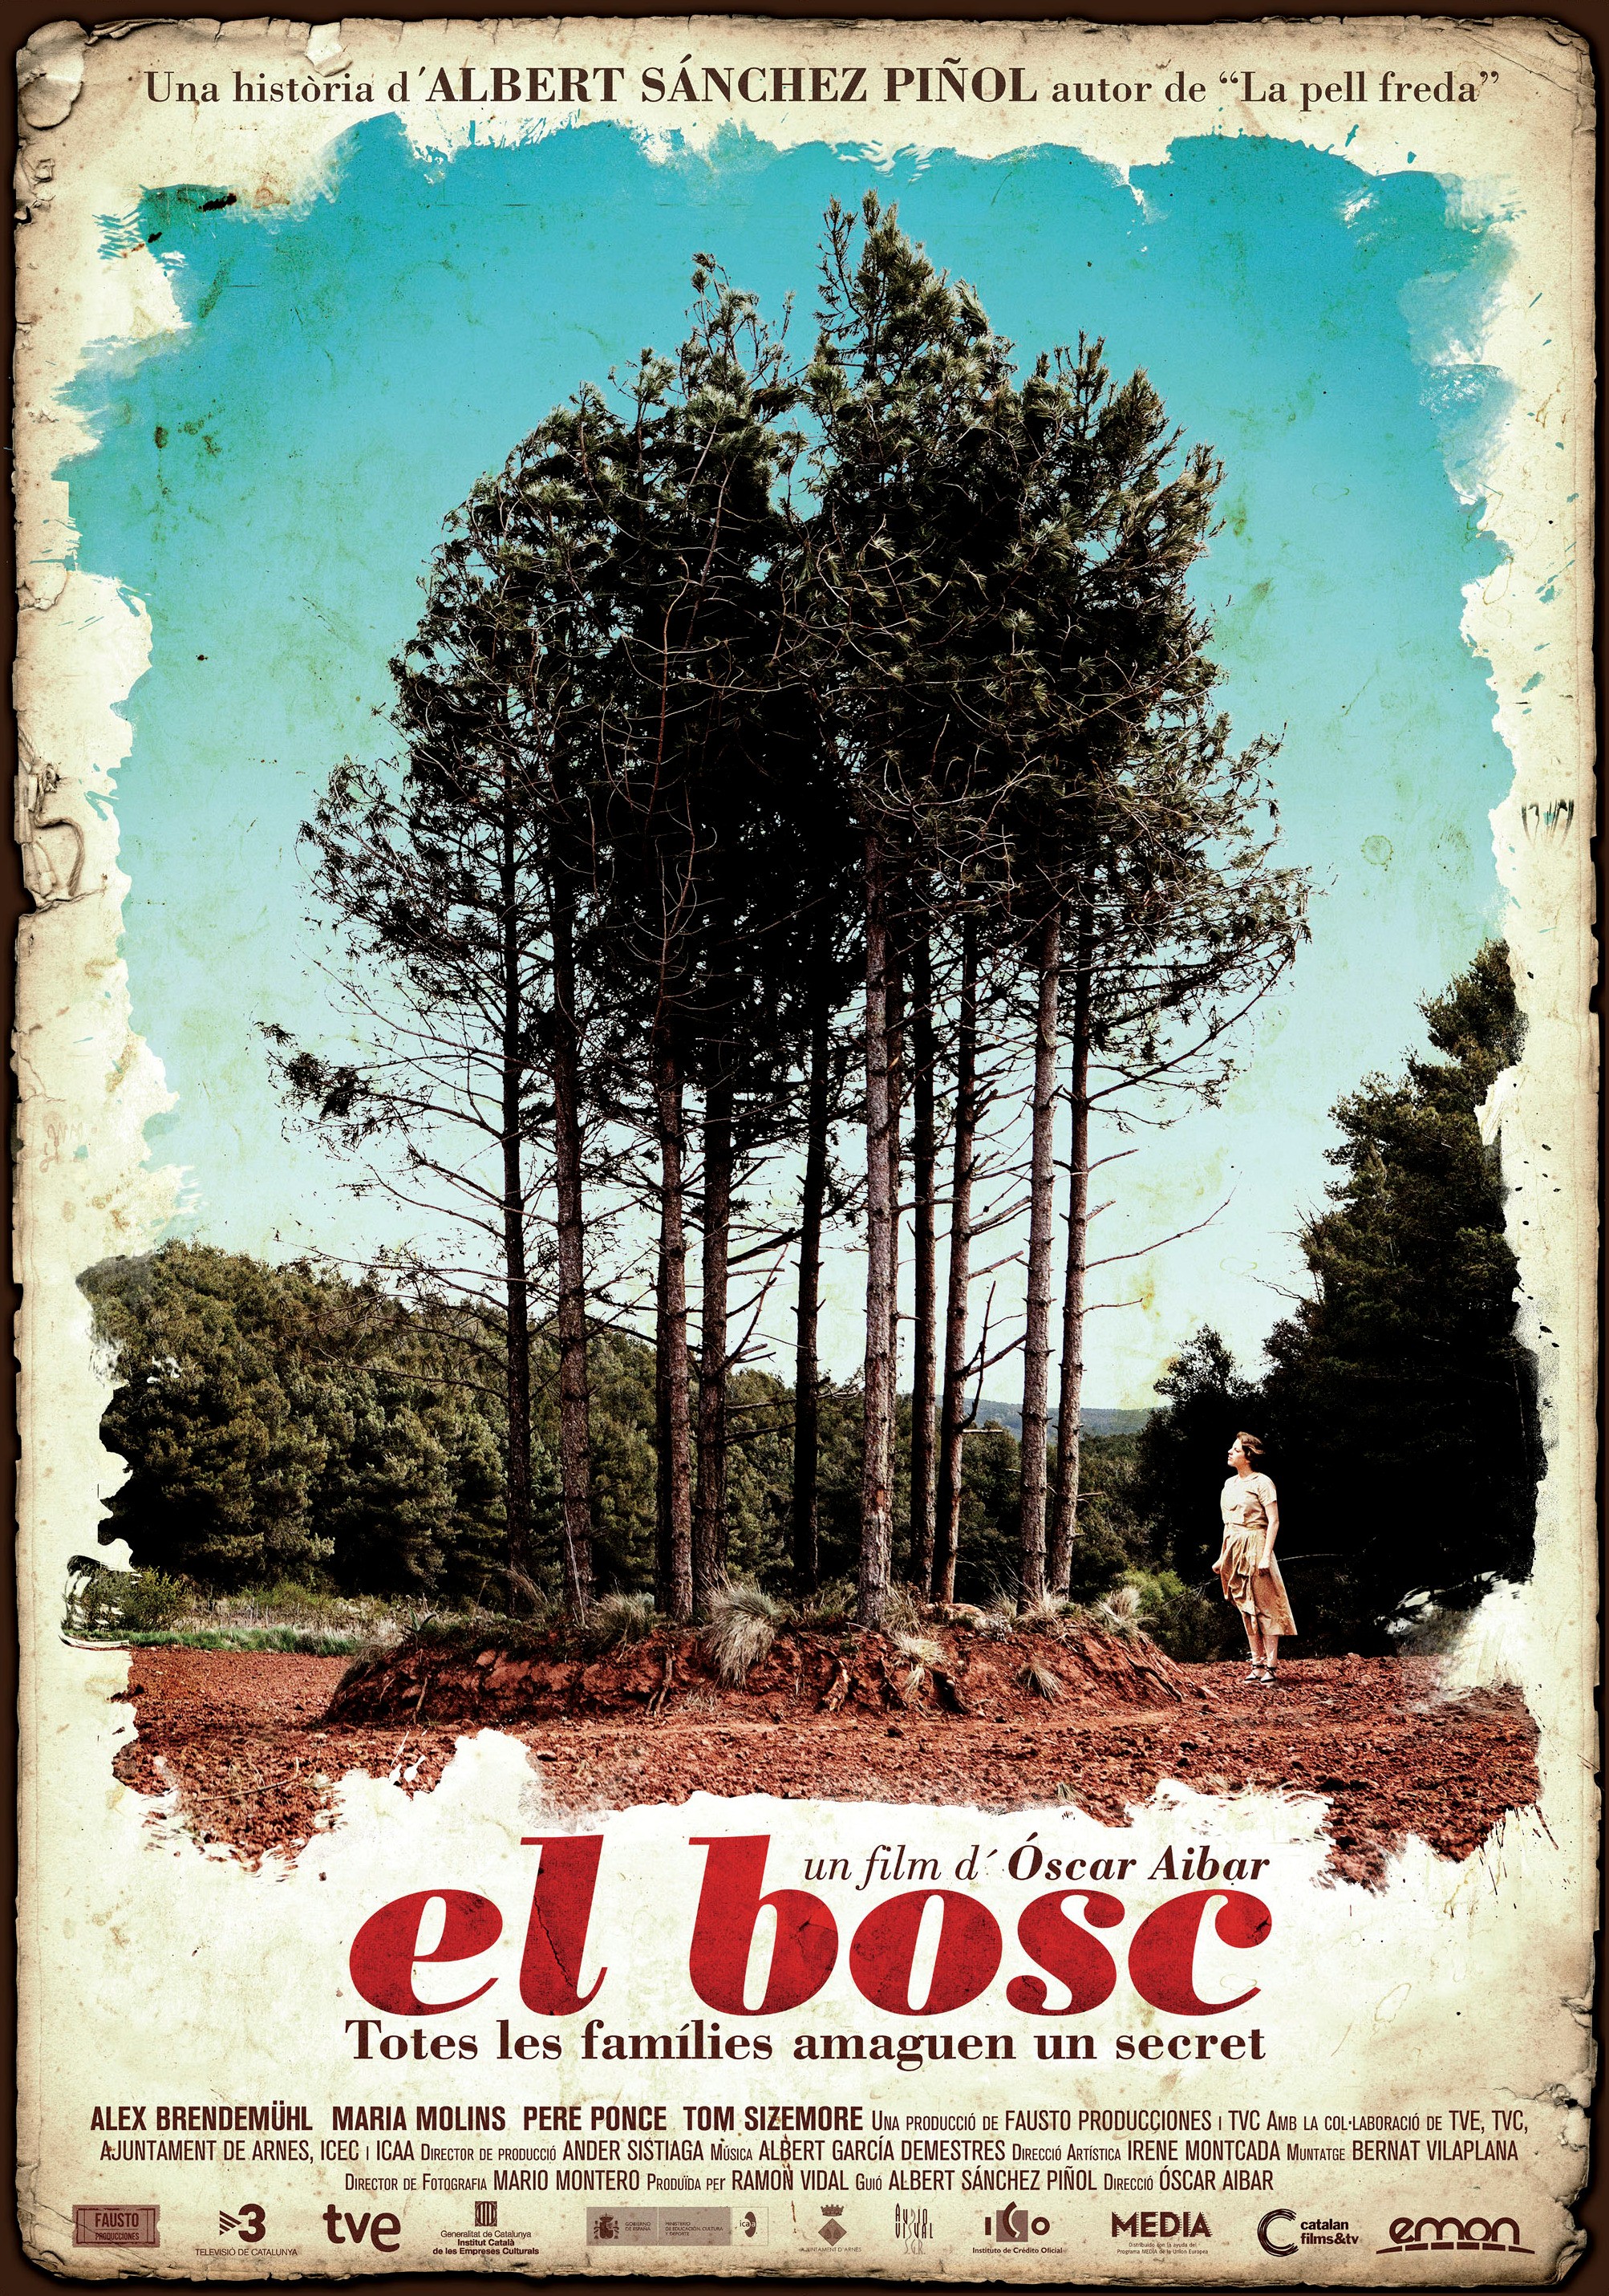 Mega Sized Movie Poster Image for El bosc 